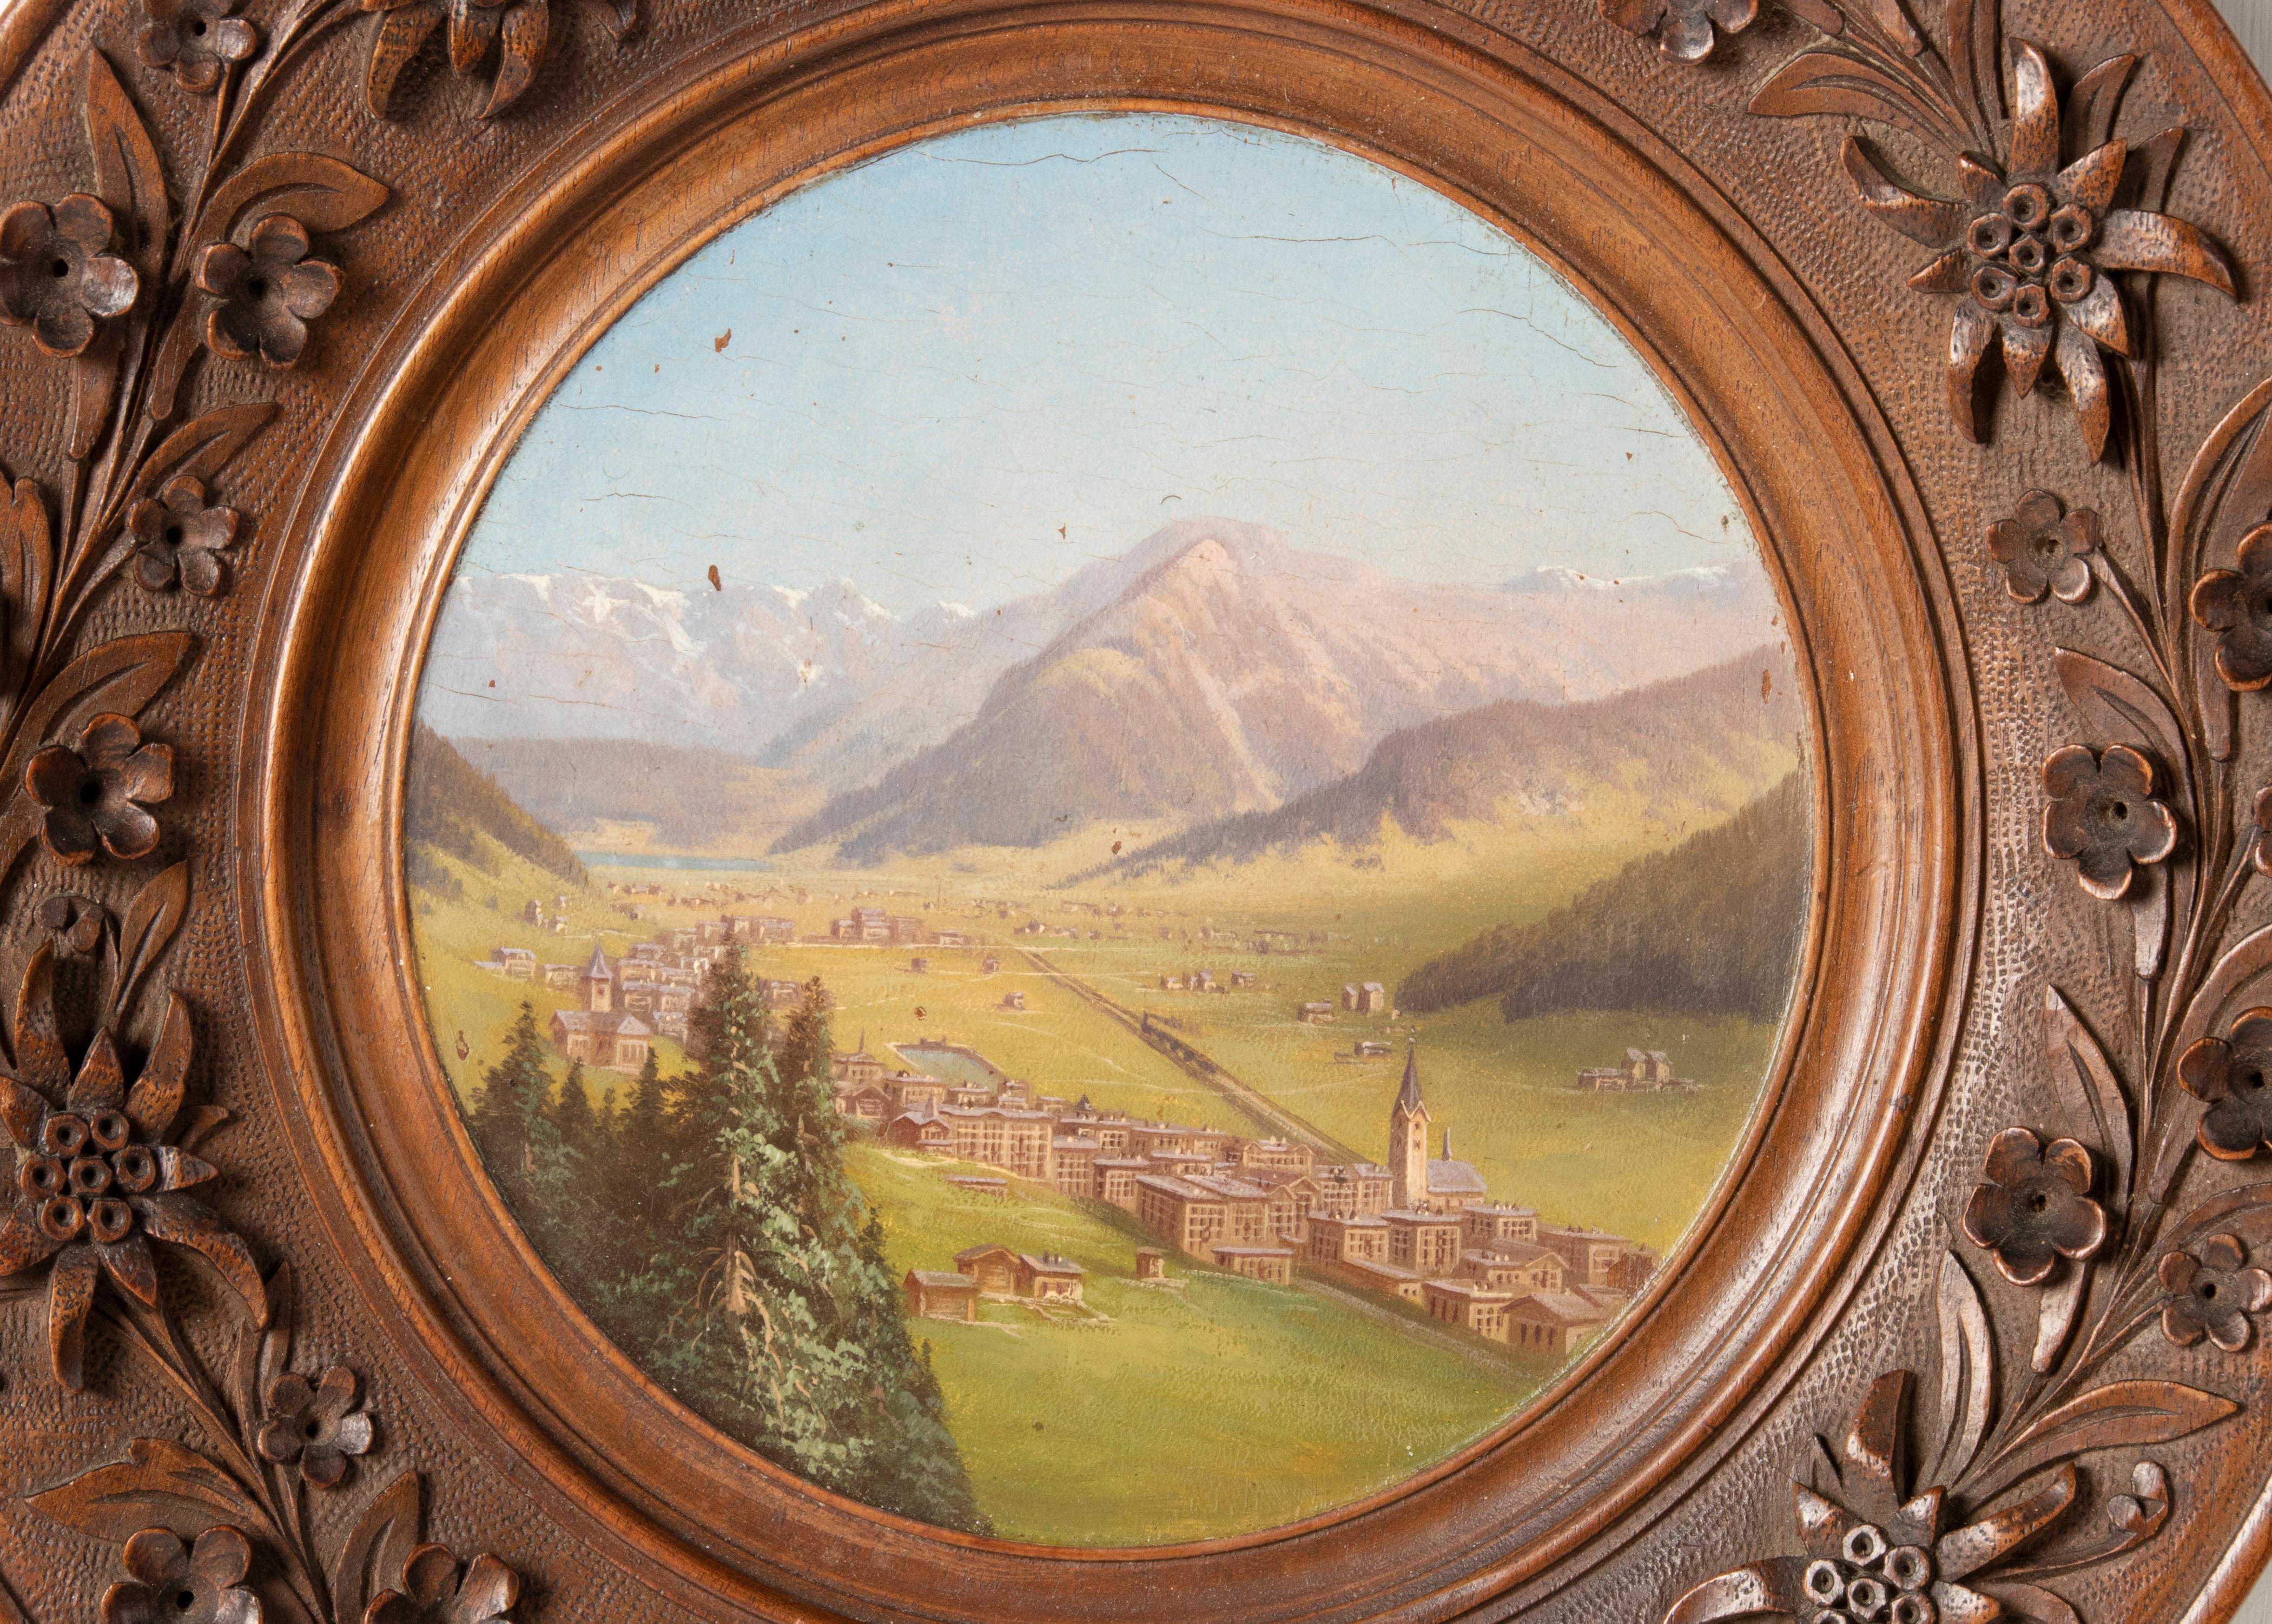 Antikes Gemälde einer Alpenlandschaft in einem Schwarzwälder Holzrahmen. Das Gemälde zeigt ein Schweizer Dorf in einem Tal. Es ist wunderschön bemalt mit sanfter Farbgebung. Der Rahmen ist handgeschnitzt mit floralen Motiven, typisch